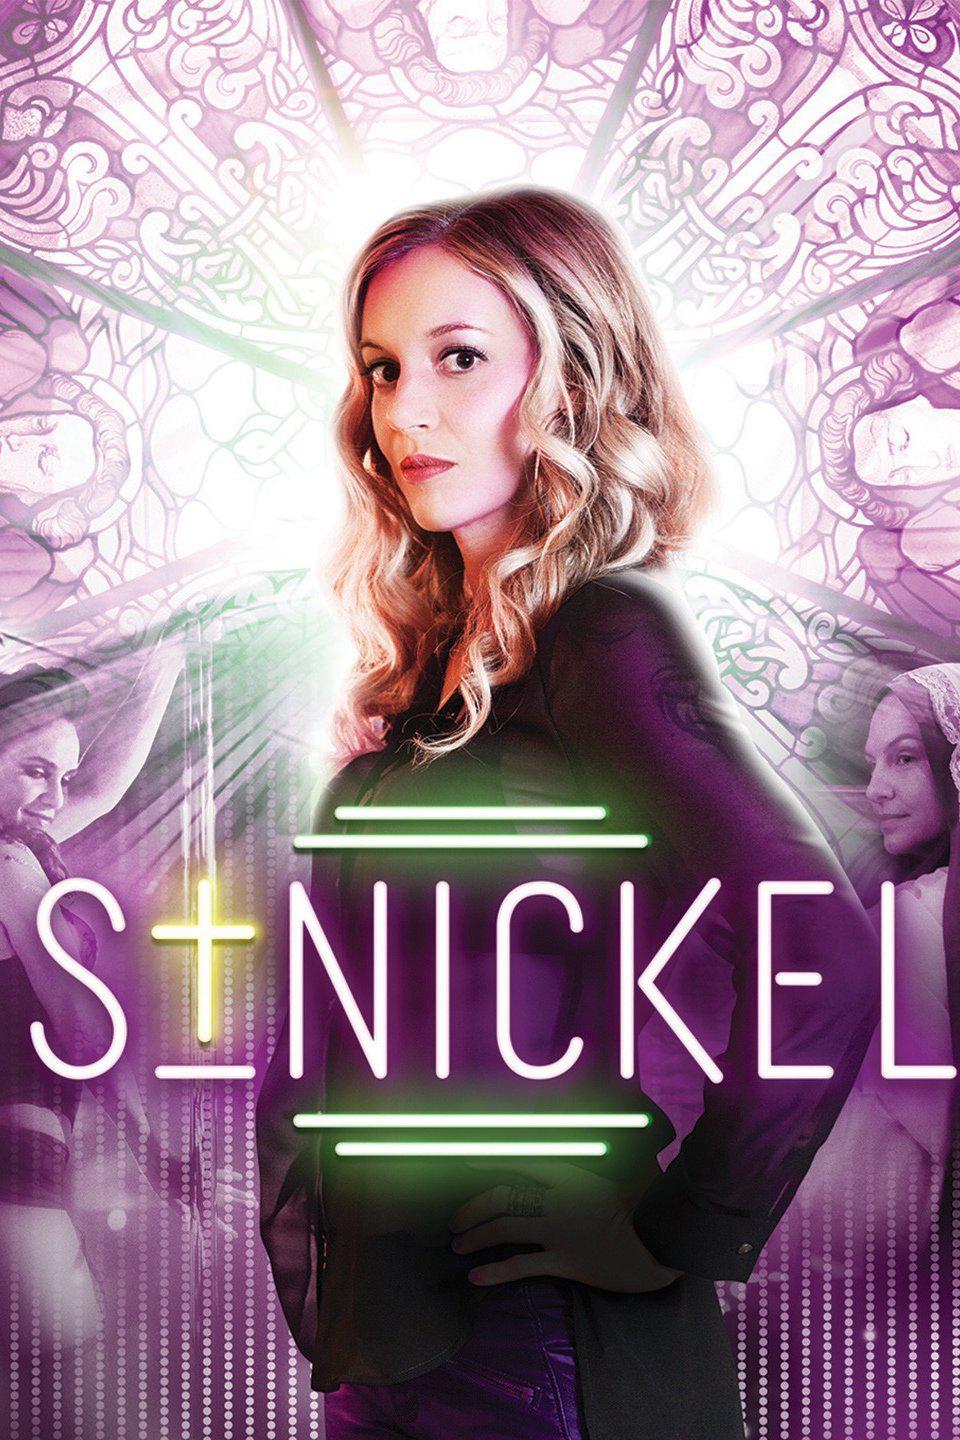 TV ratings for St-nickel in Spain. Unis TV series